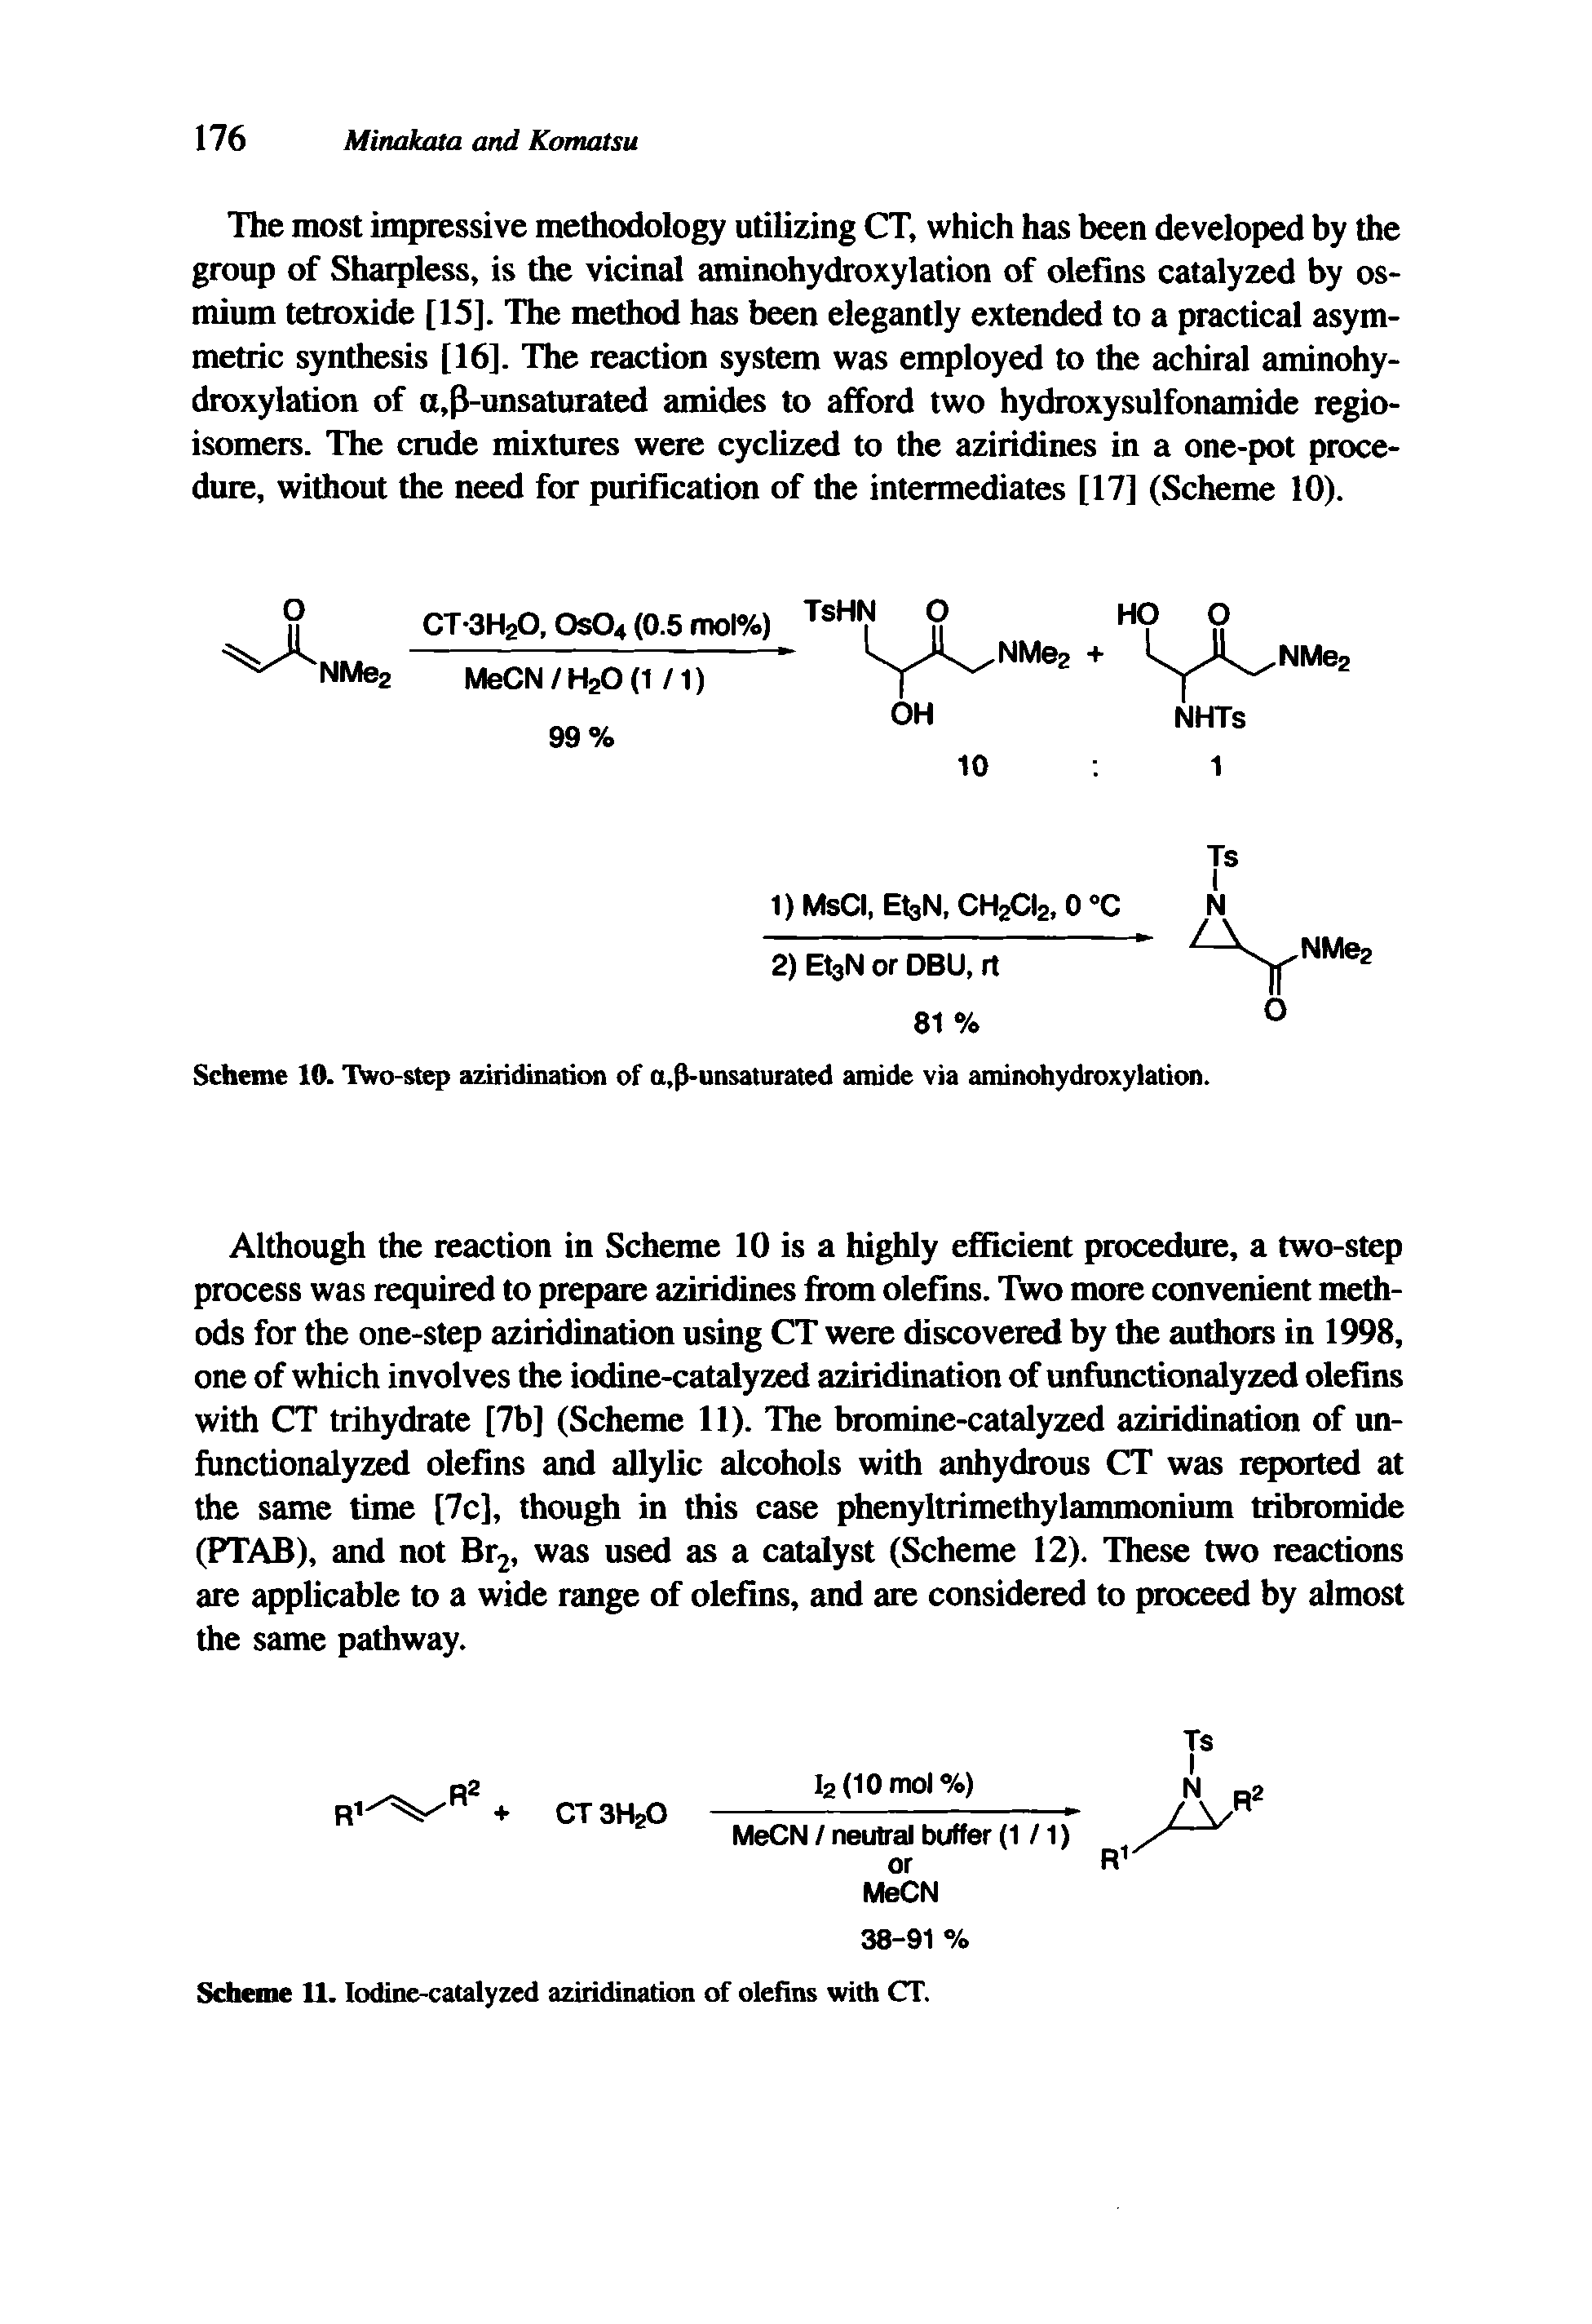 Scheme 11. Iodine-catalyzed aziridination of olefins with CT.